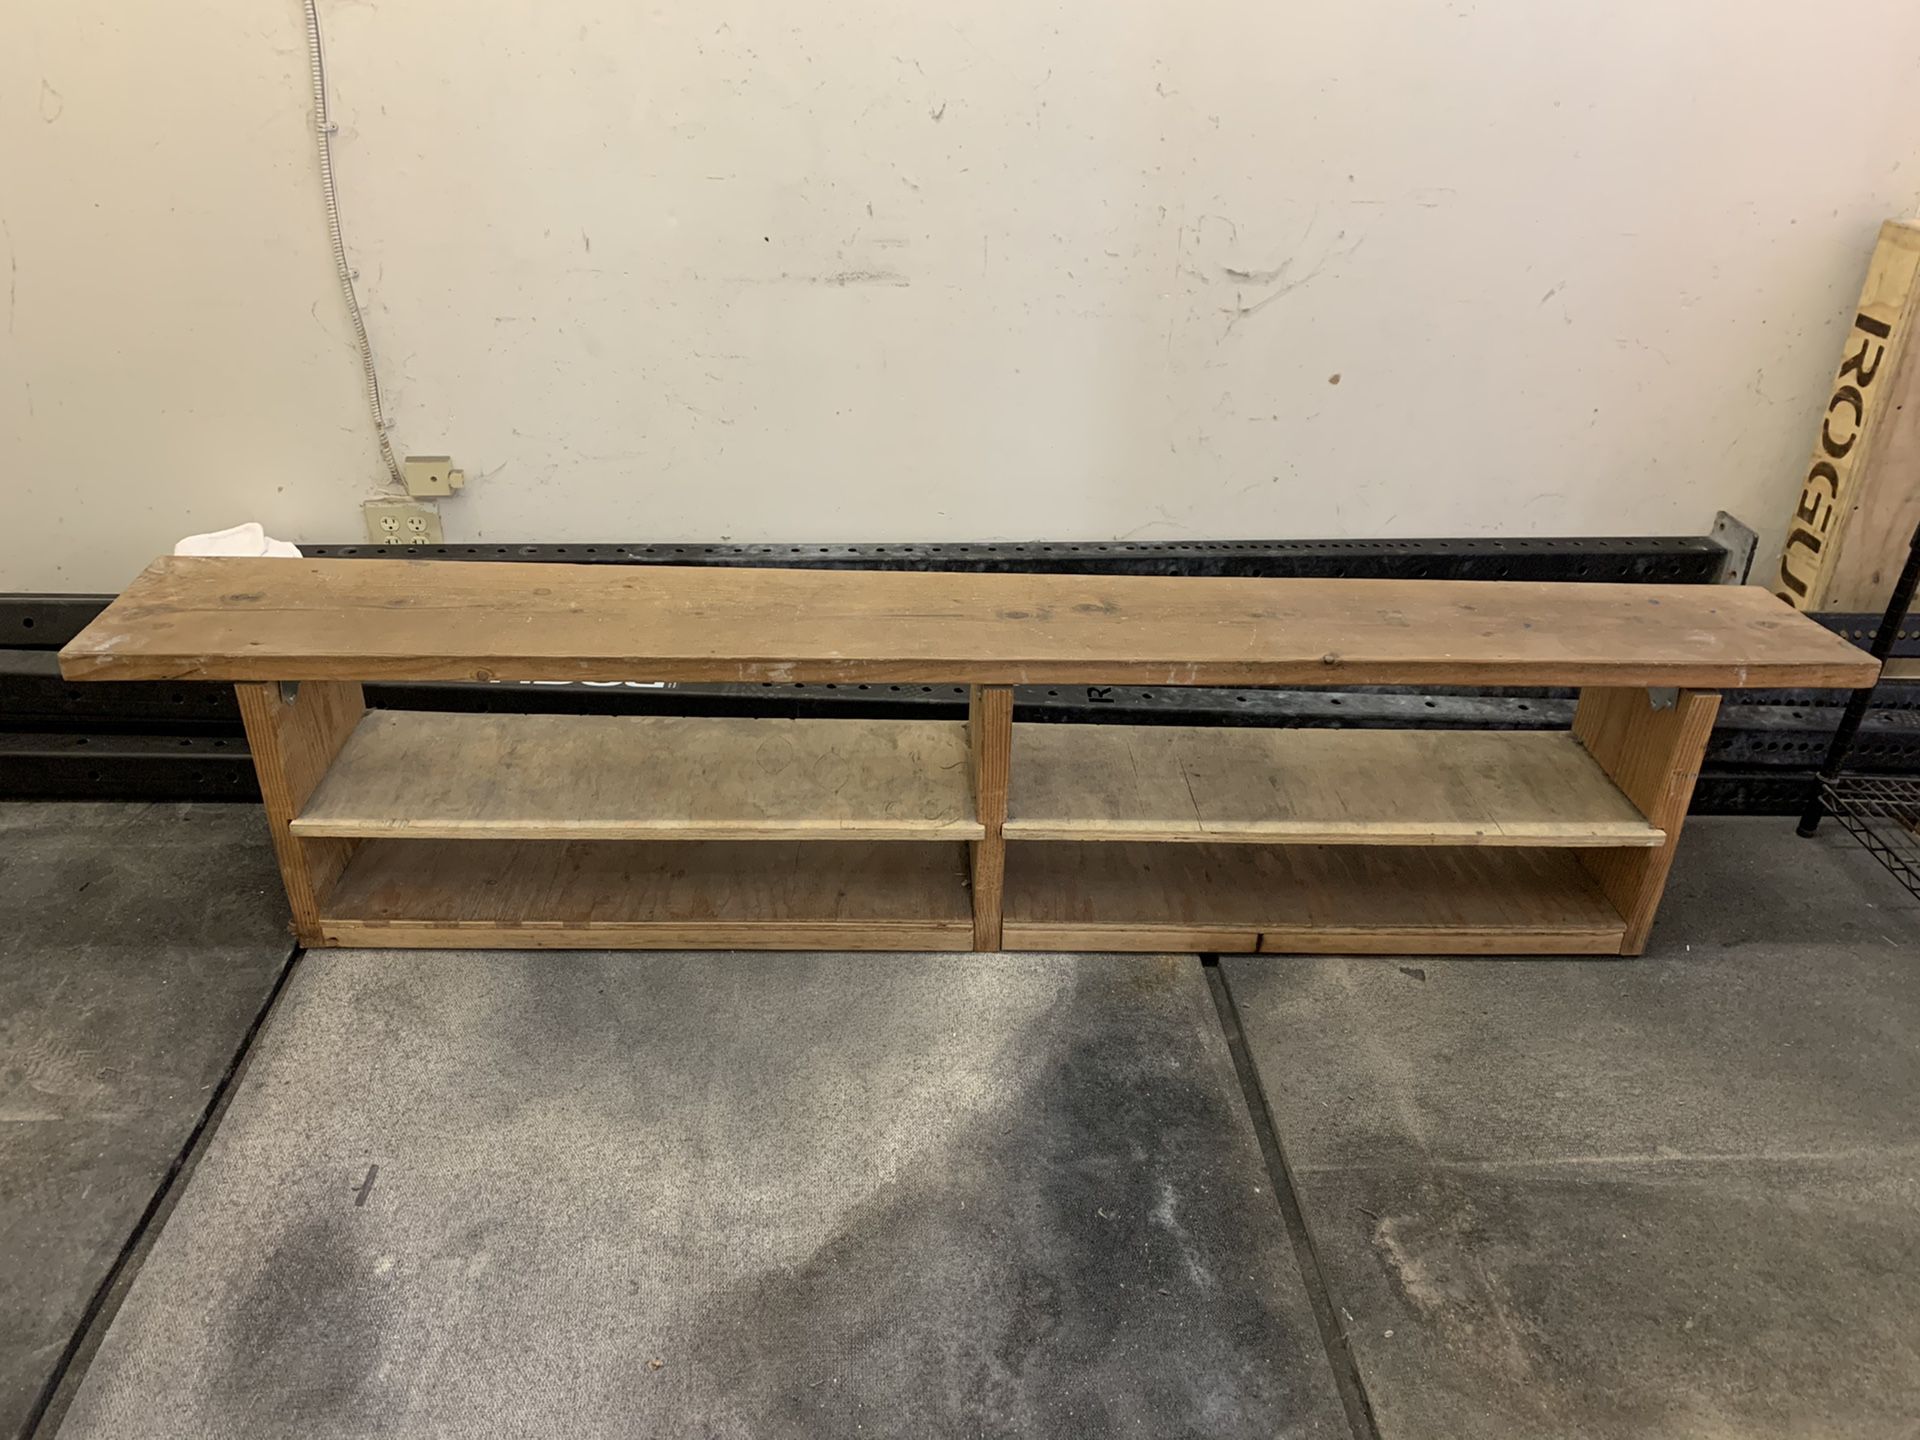 Indoor / outdoor bench / wood / with shelves or shoe rack